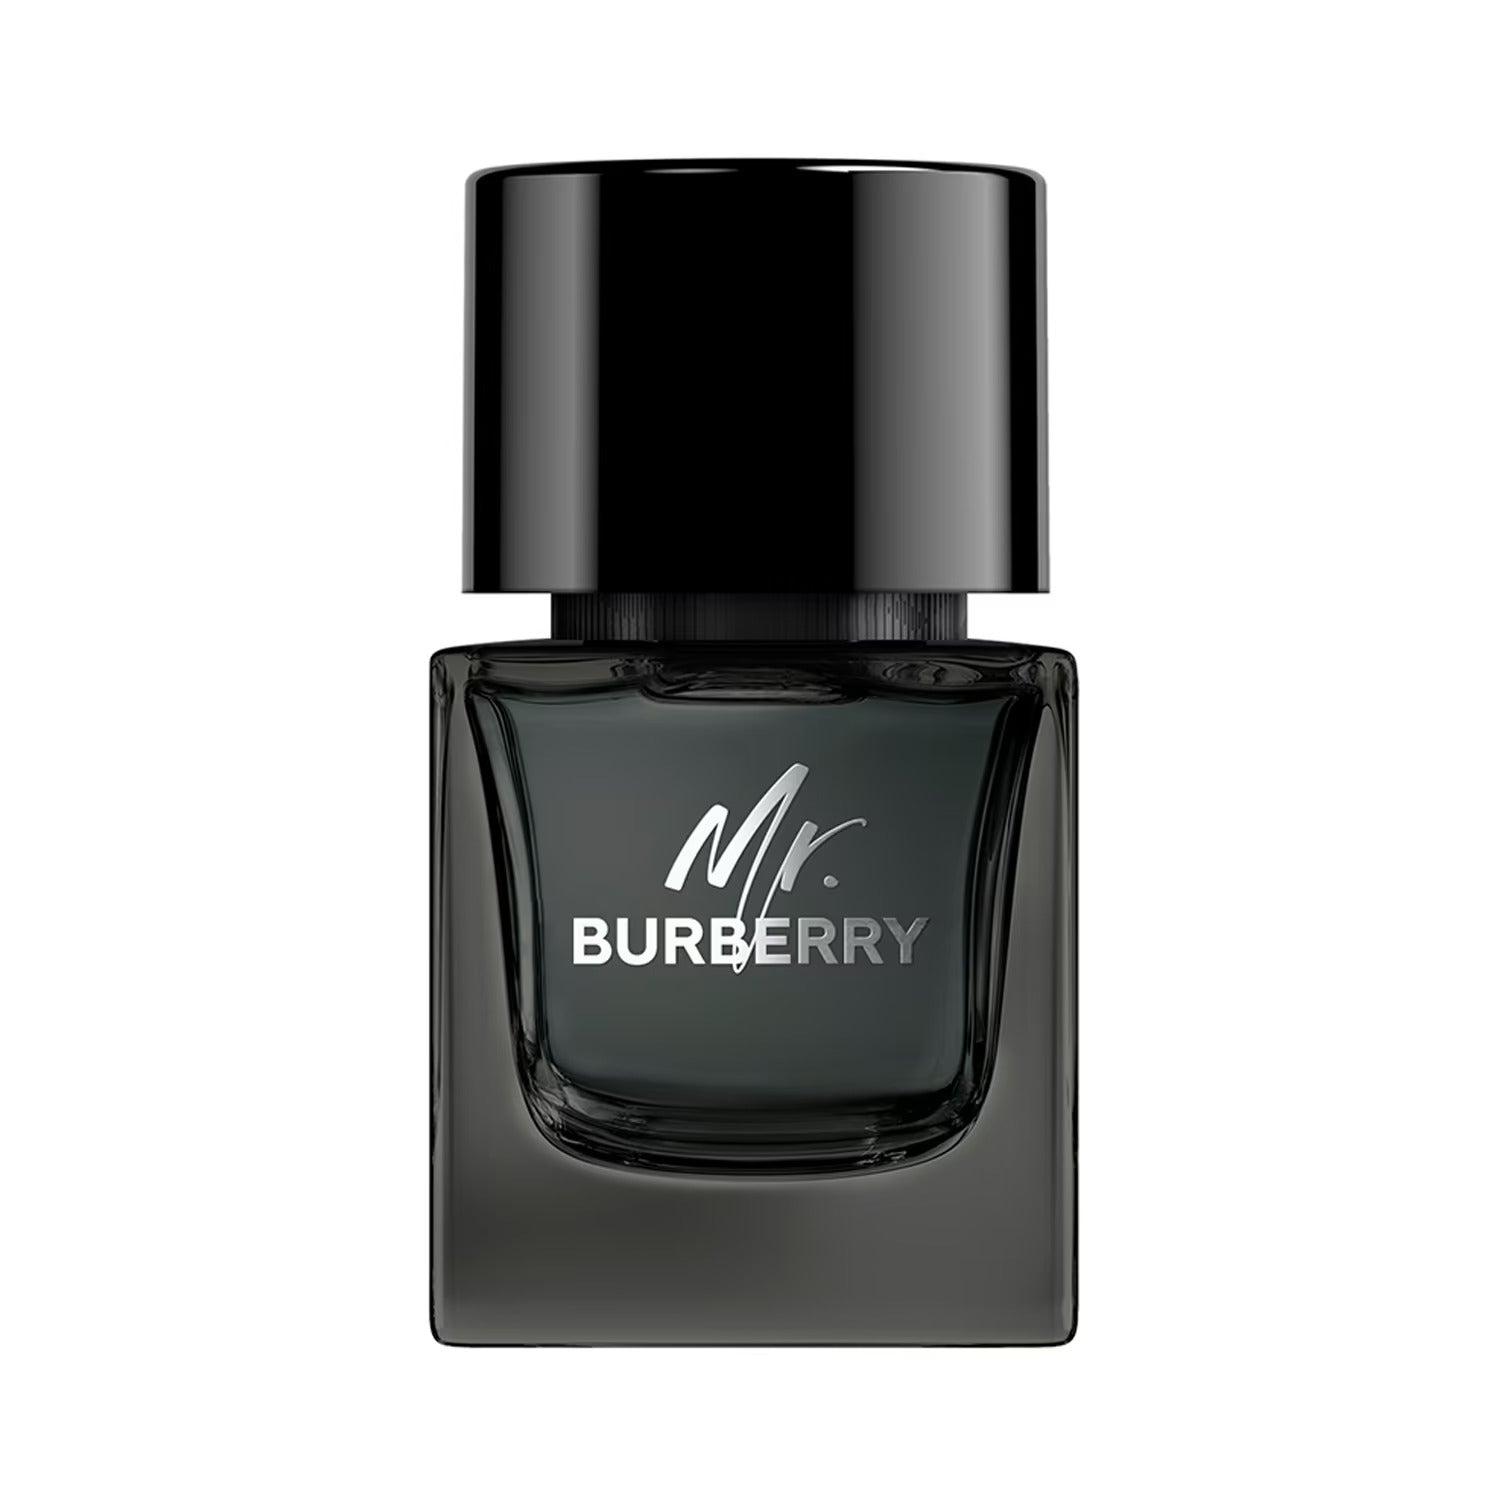 Burberry Mr. Burberry Eau de Parfum Spray 50 ml for Men